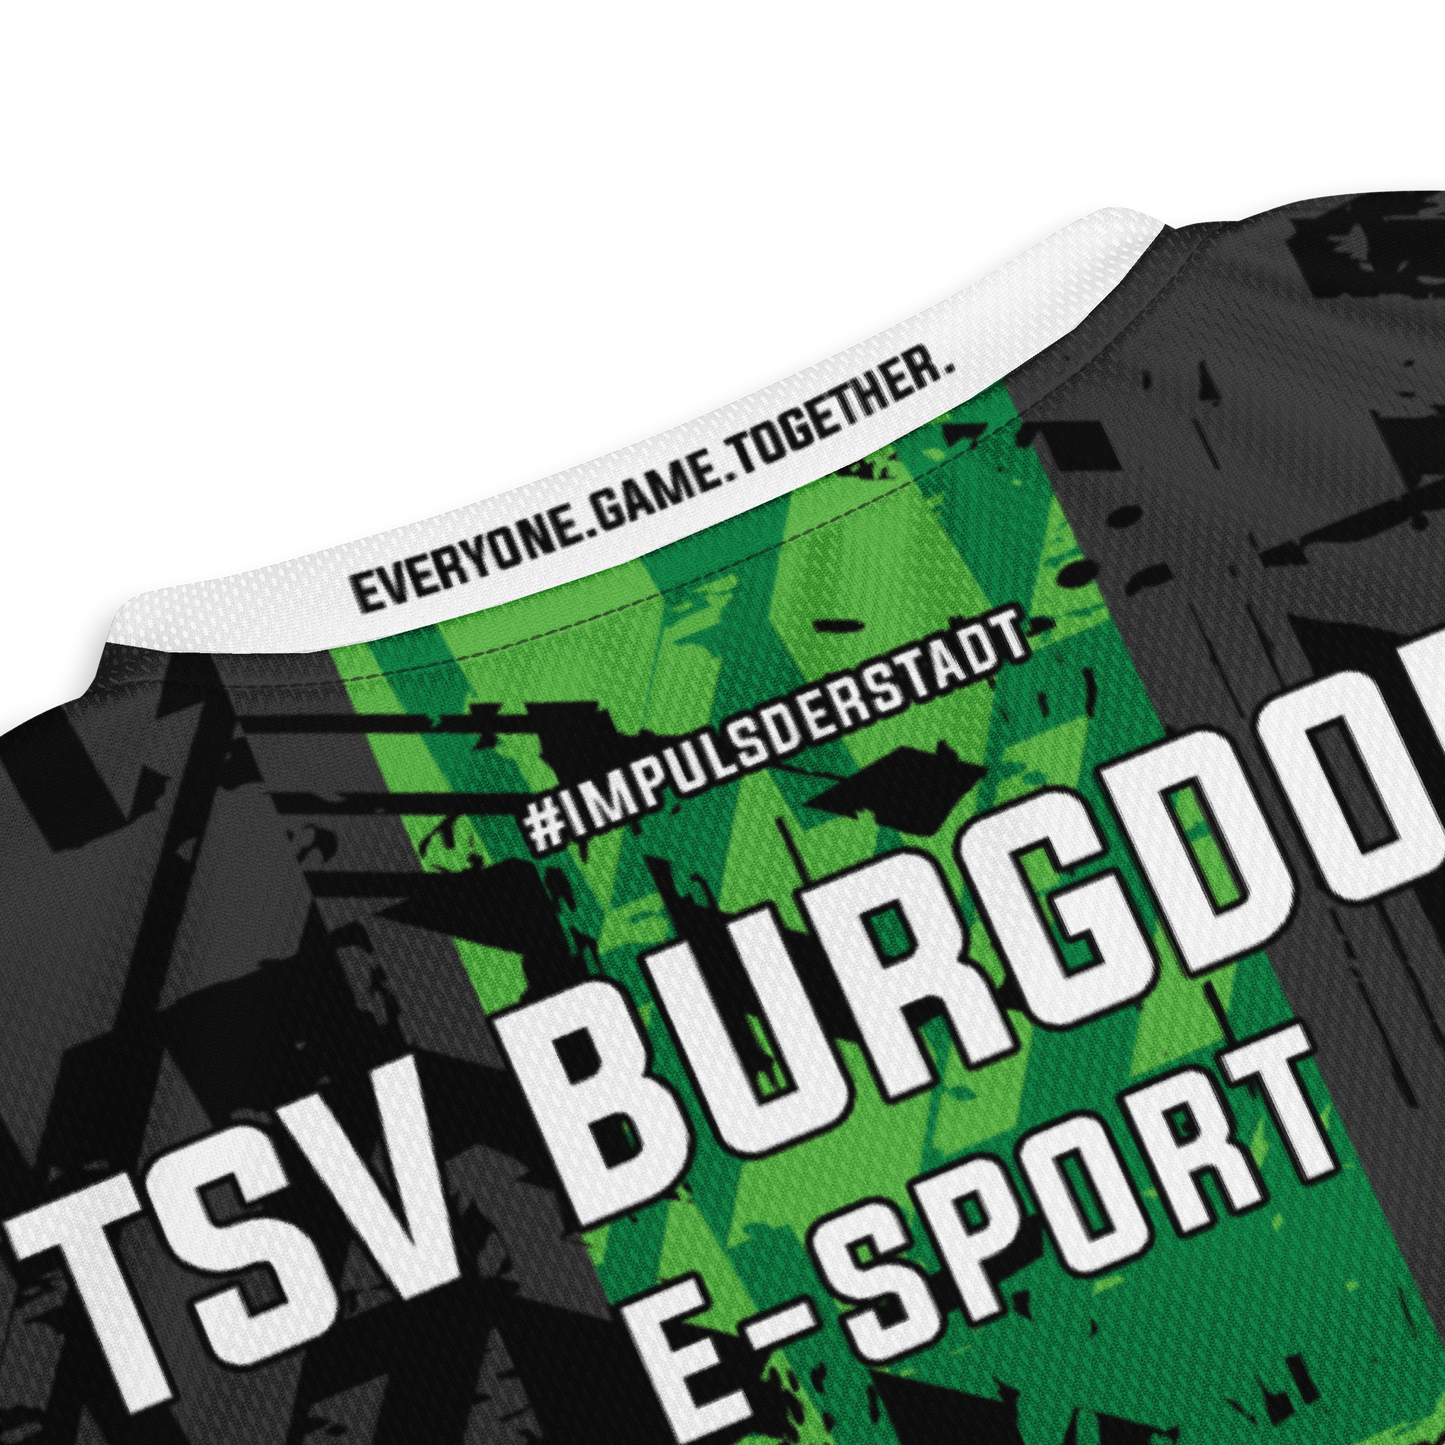 TSV BURGDORF - E-Sport - Jersey 2023